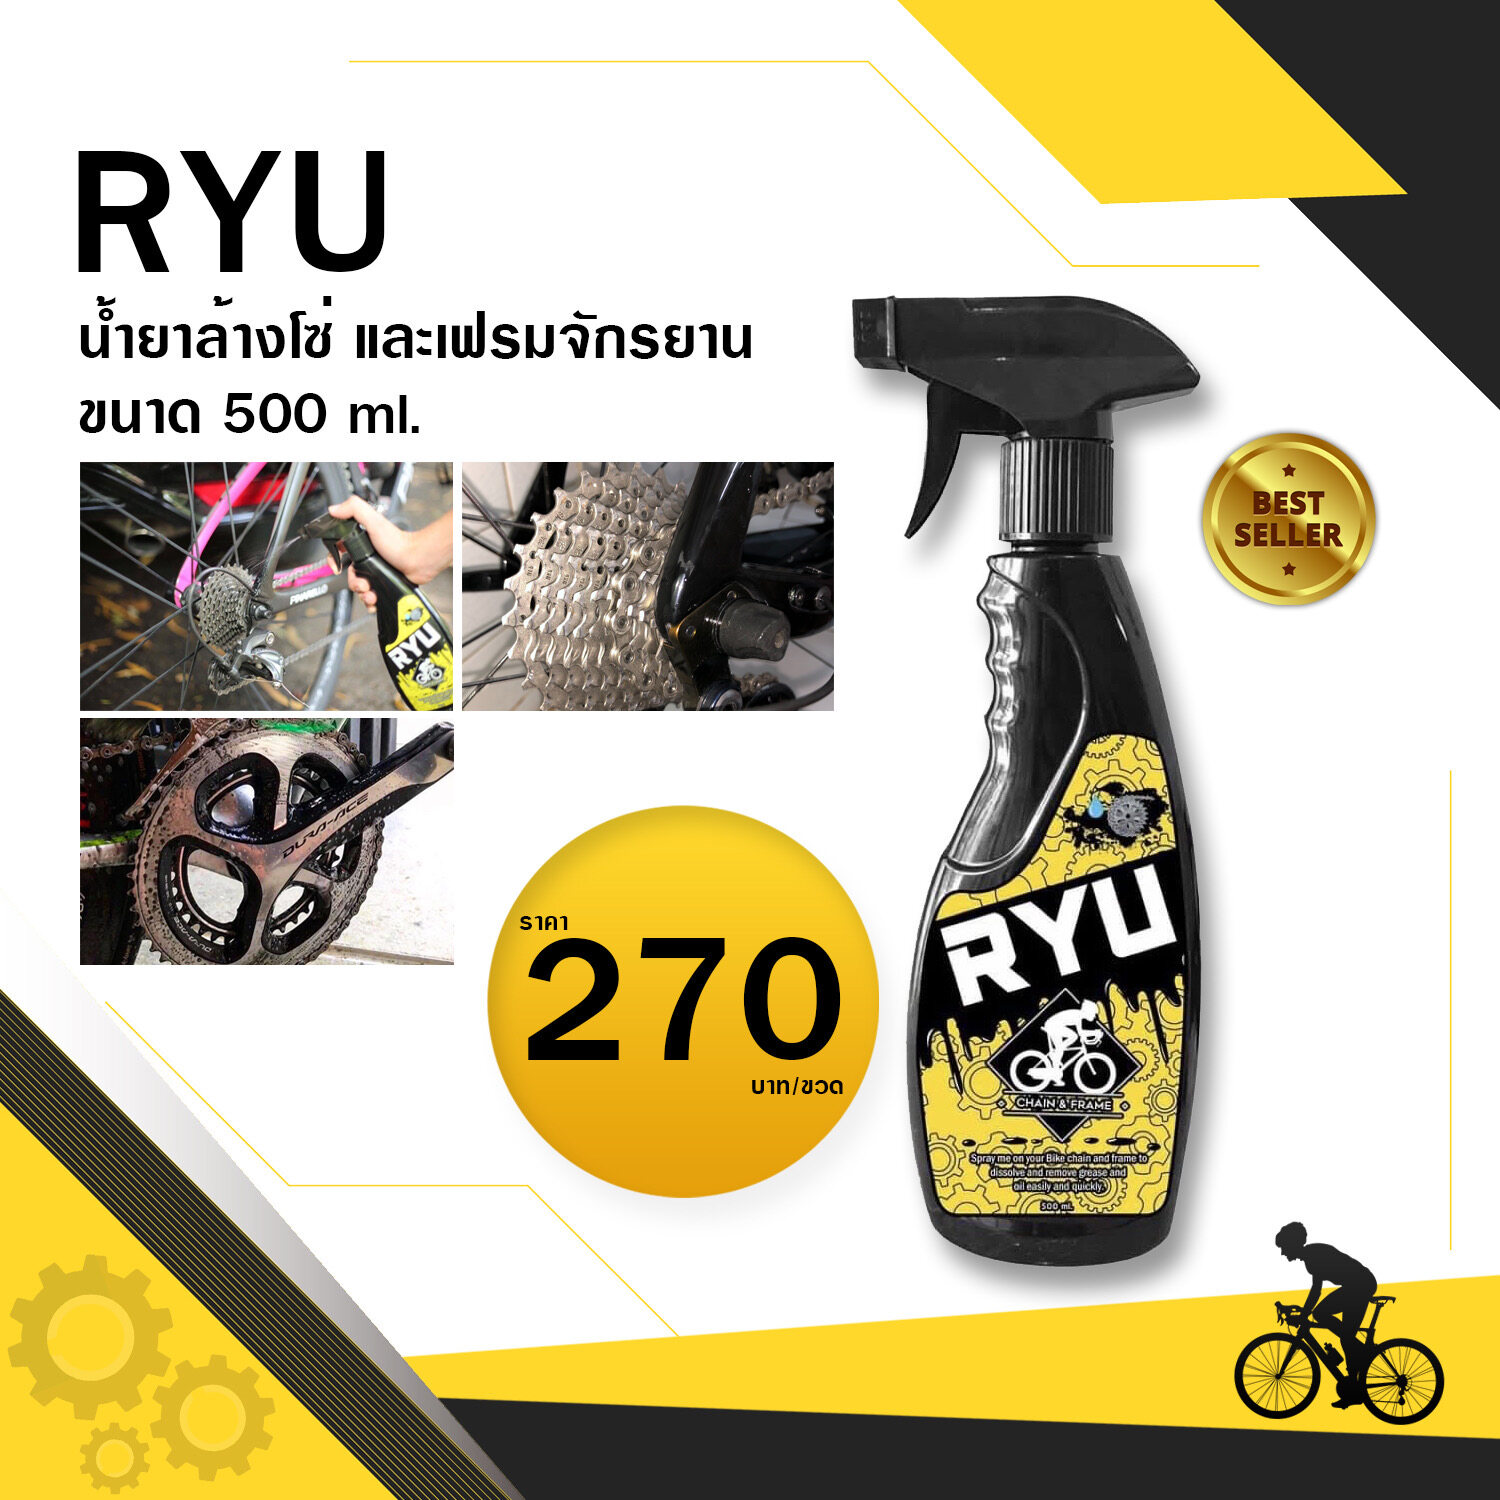 นำ้ยาล้างโซ่ RYU เฟรม จักรยาน 500ml